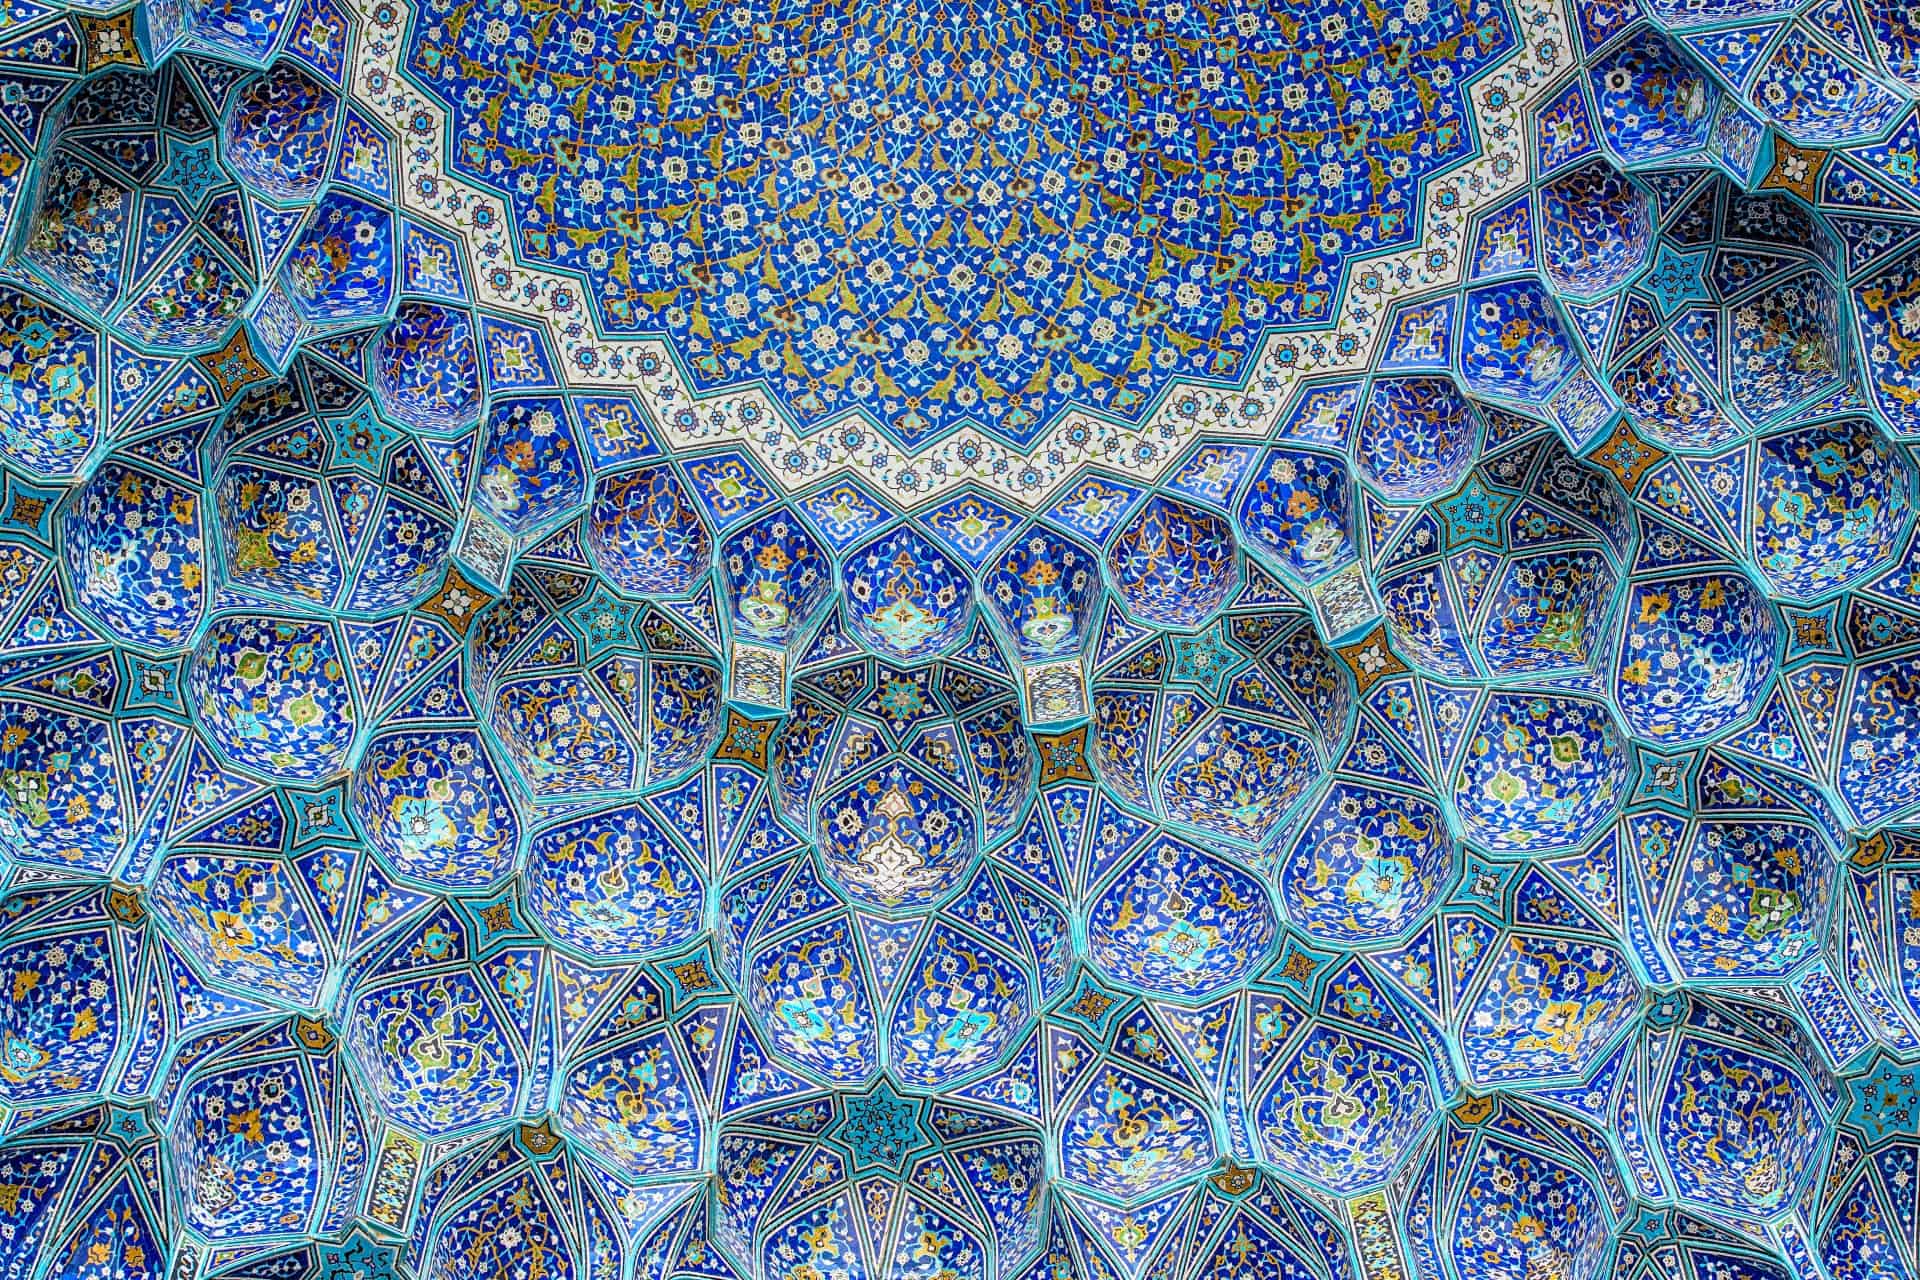 Mosque tiles